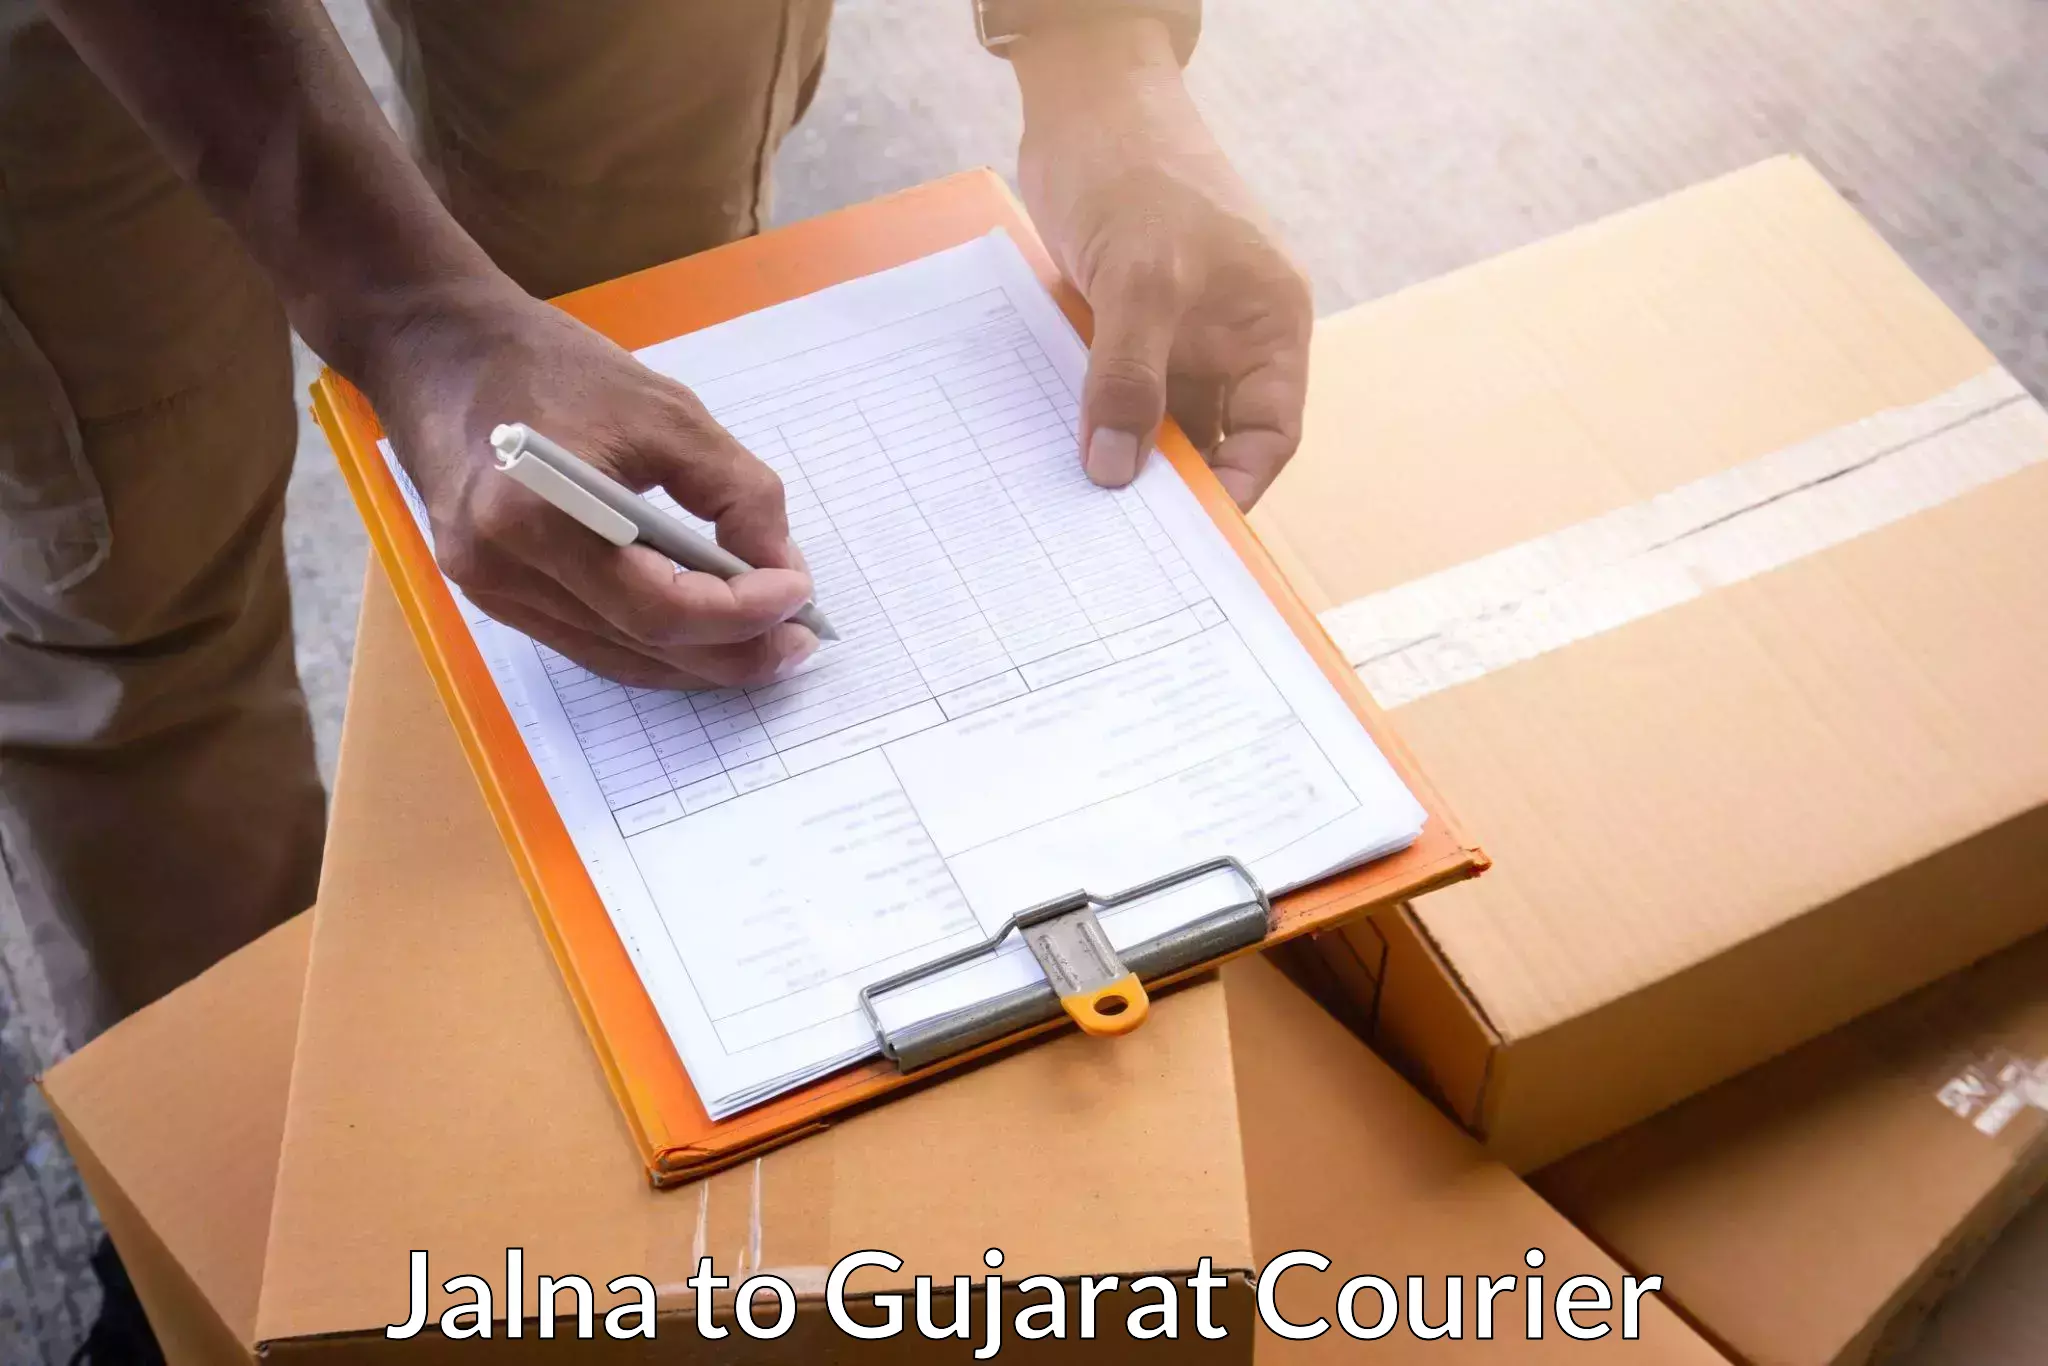 Courier service comparison Jalna to Bhesan